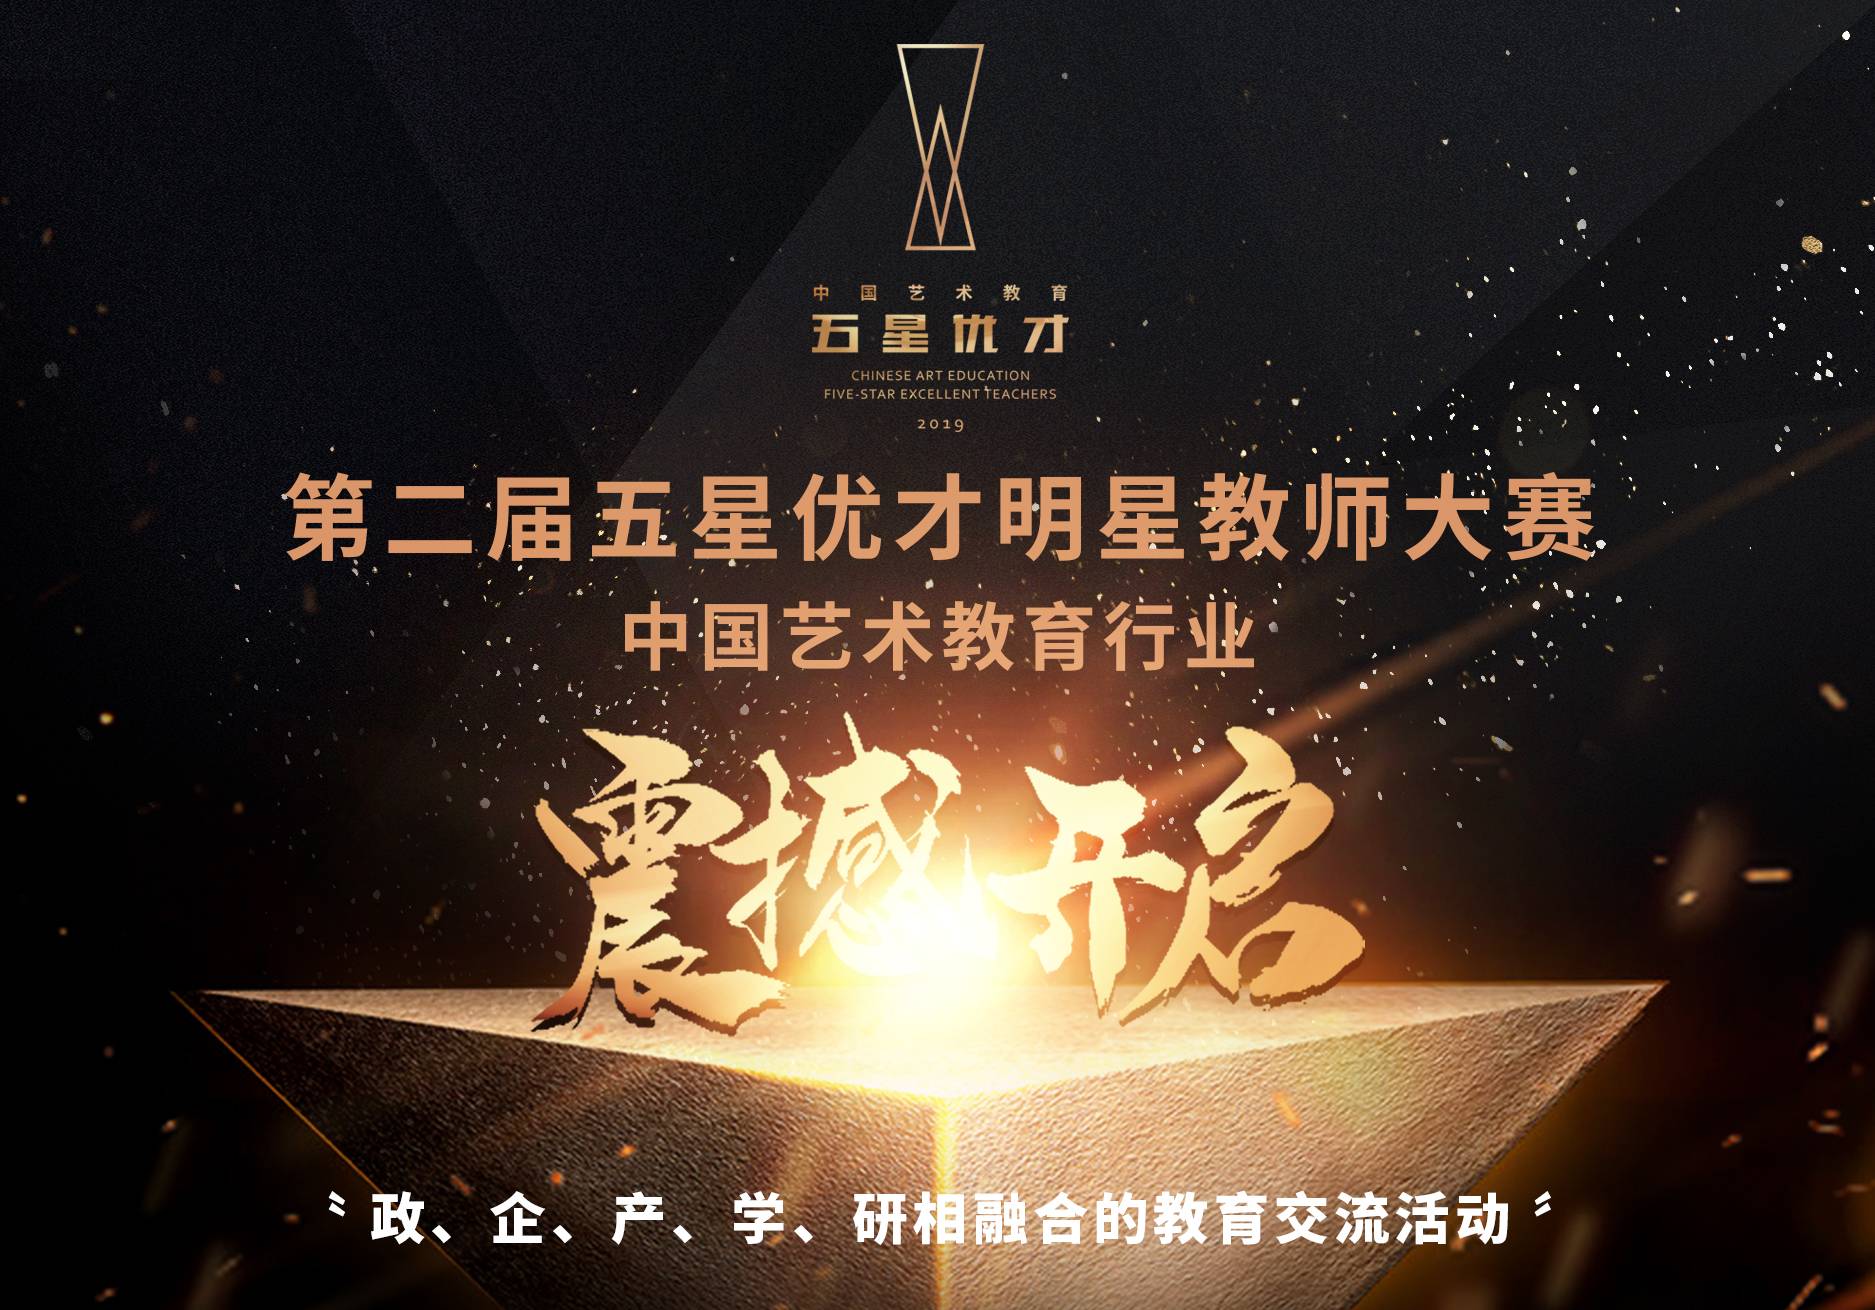 第二届中国艺术教育“五星优才”明星教师评选大赛海选征稿中